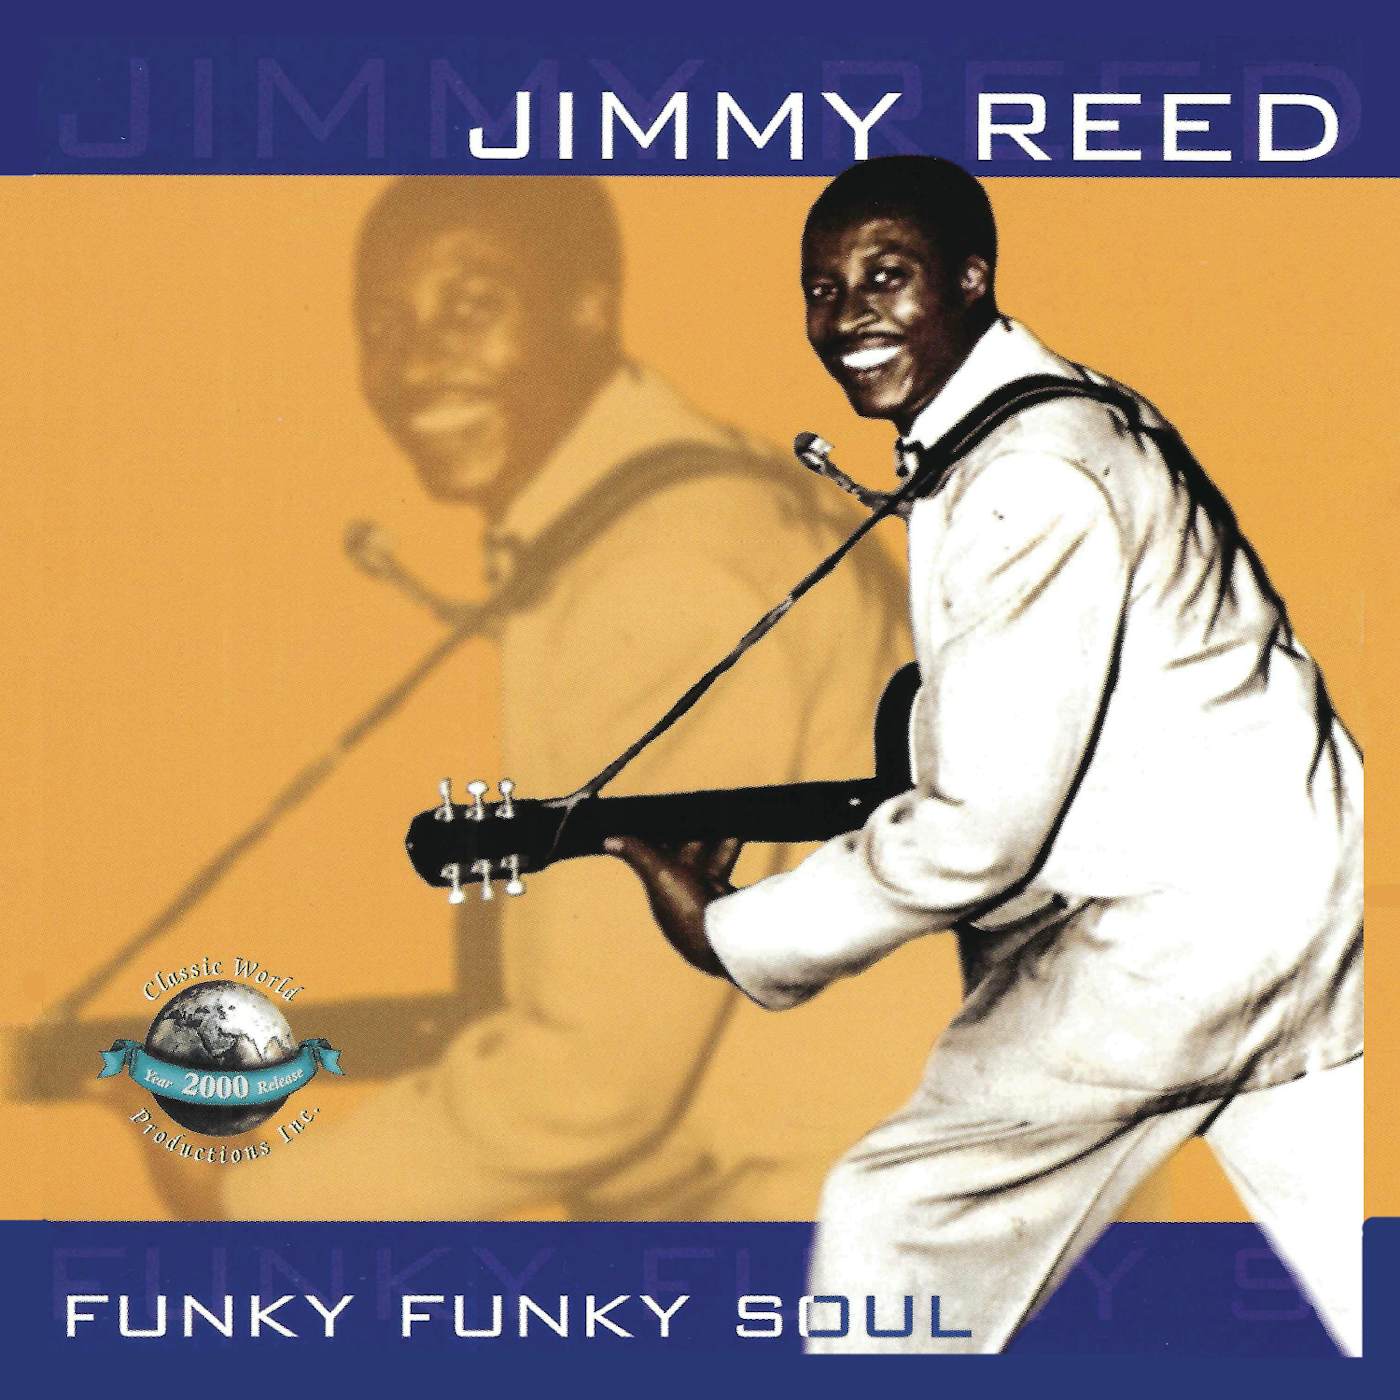 Jimmy Reed FUNKY FUNKY SOUL CD